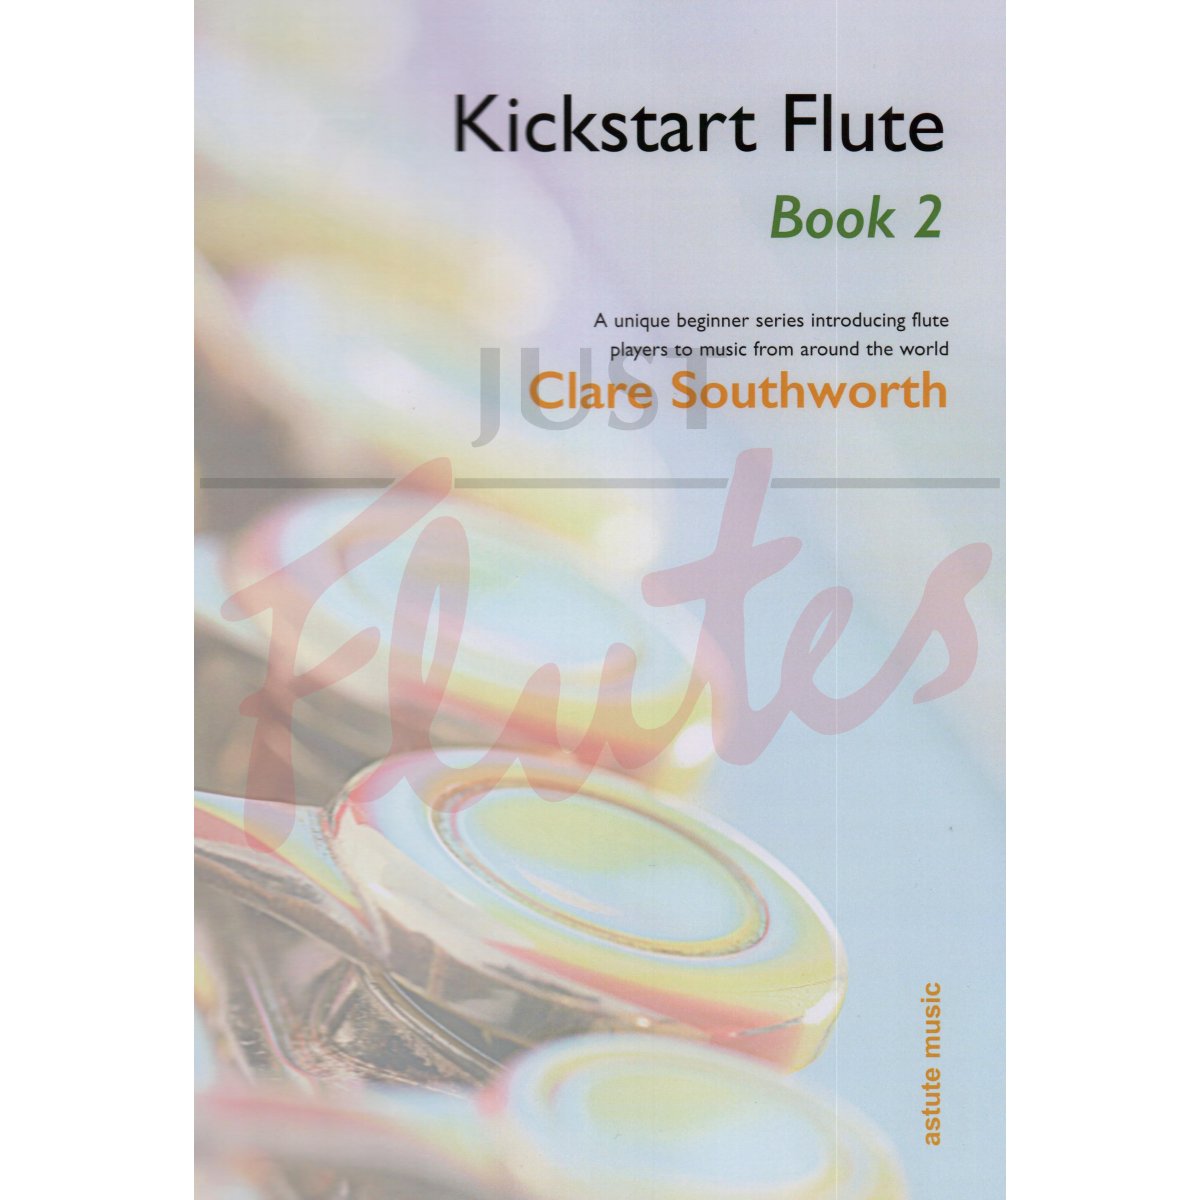 Kickstart Flute Book 2